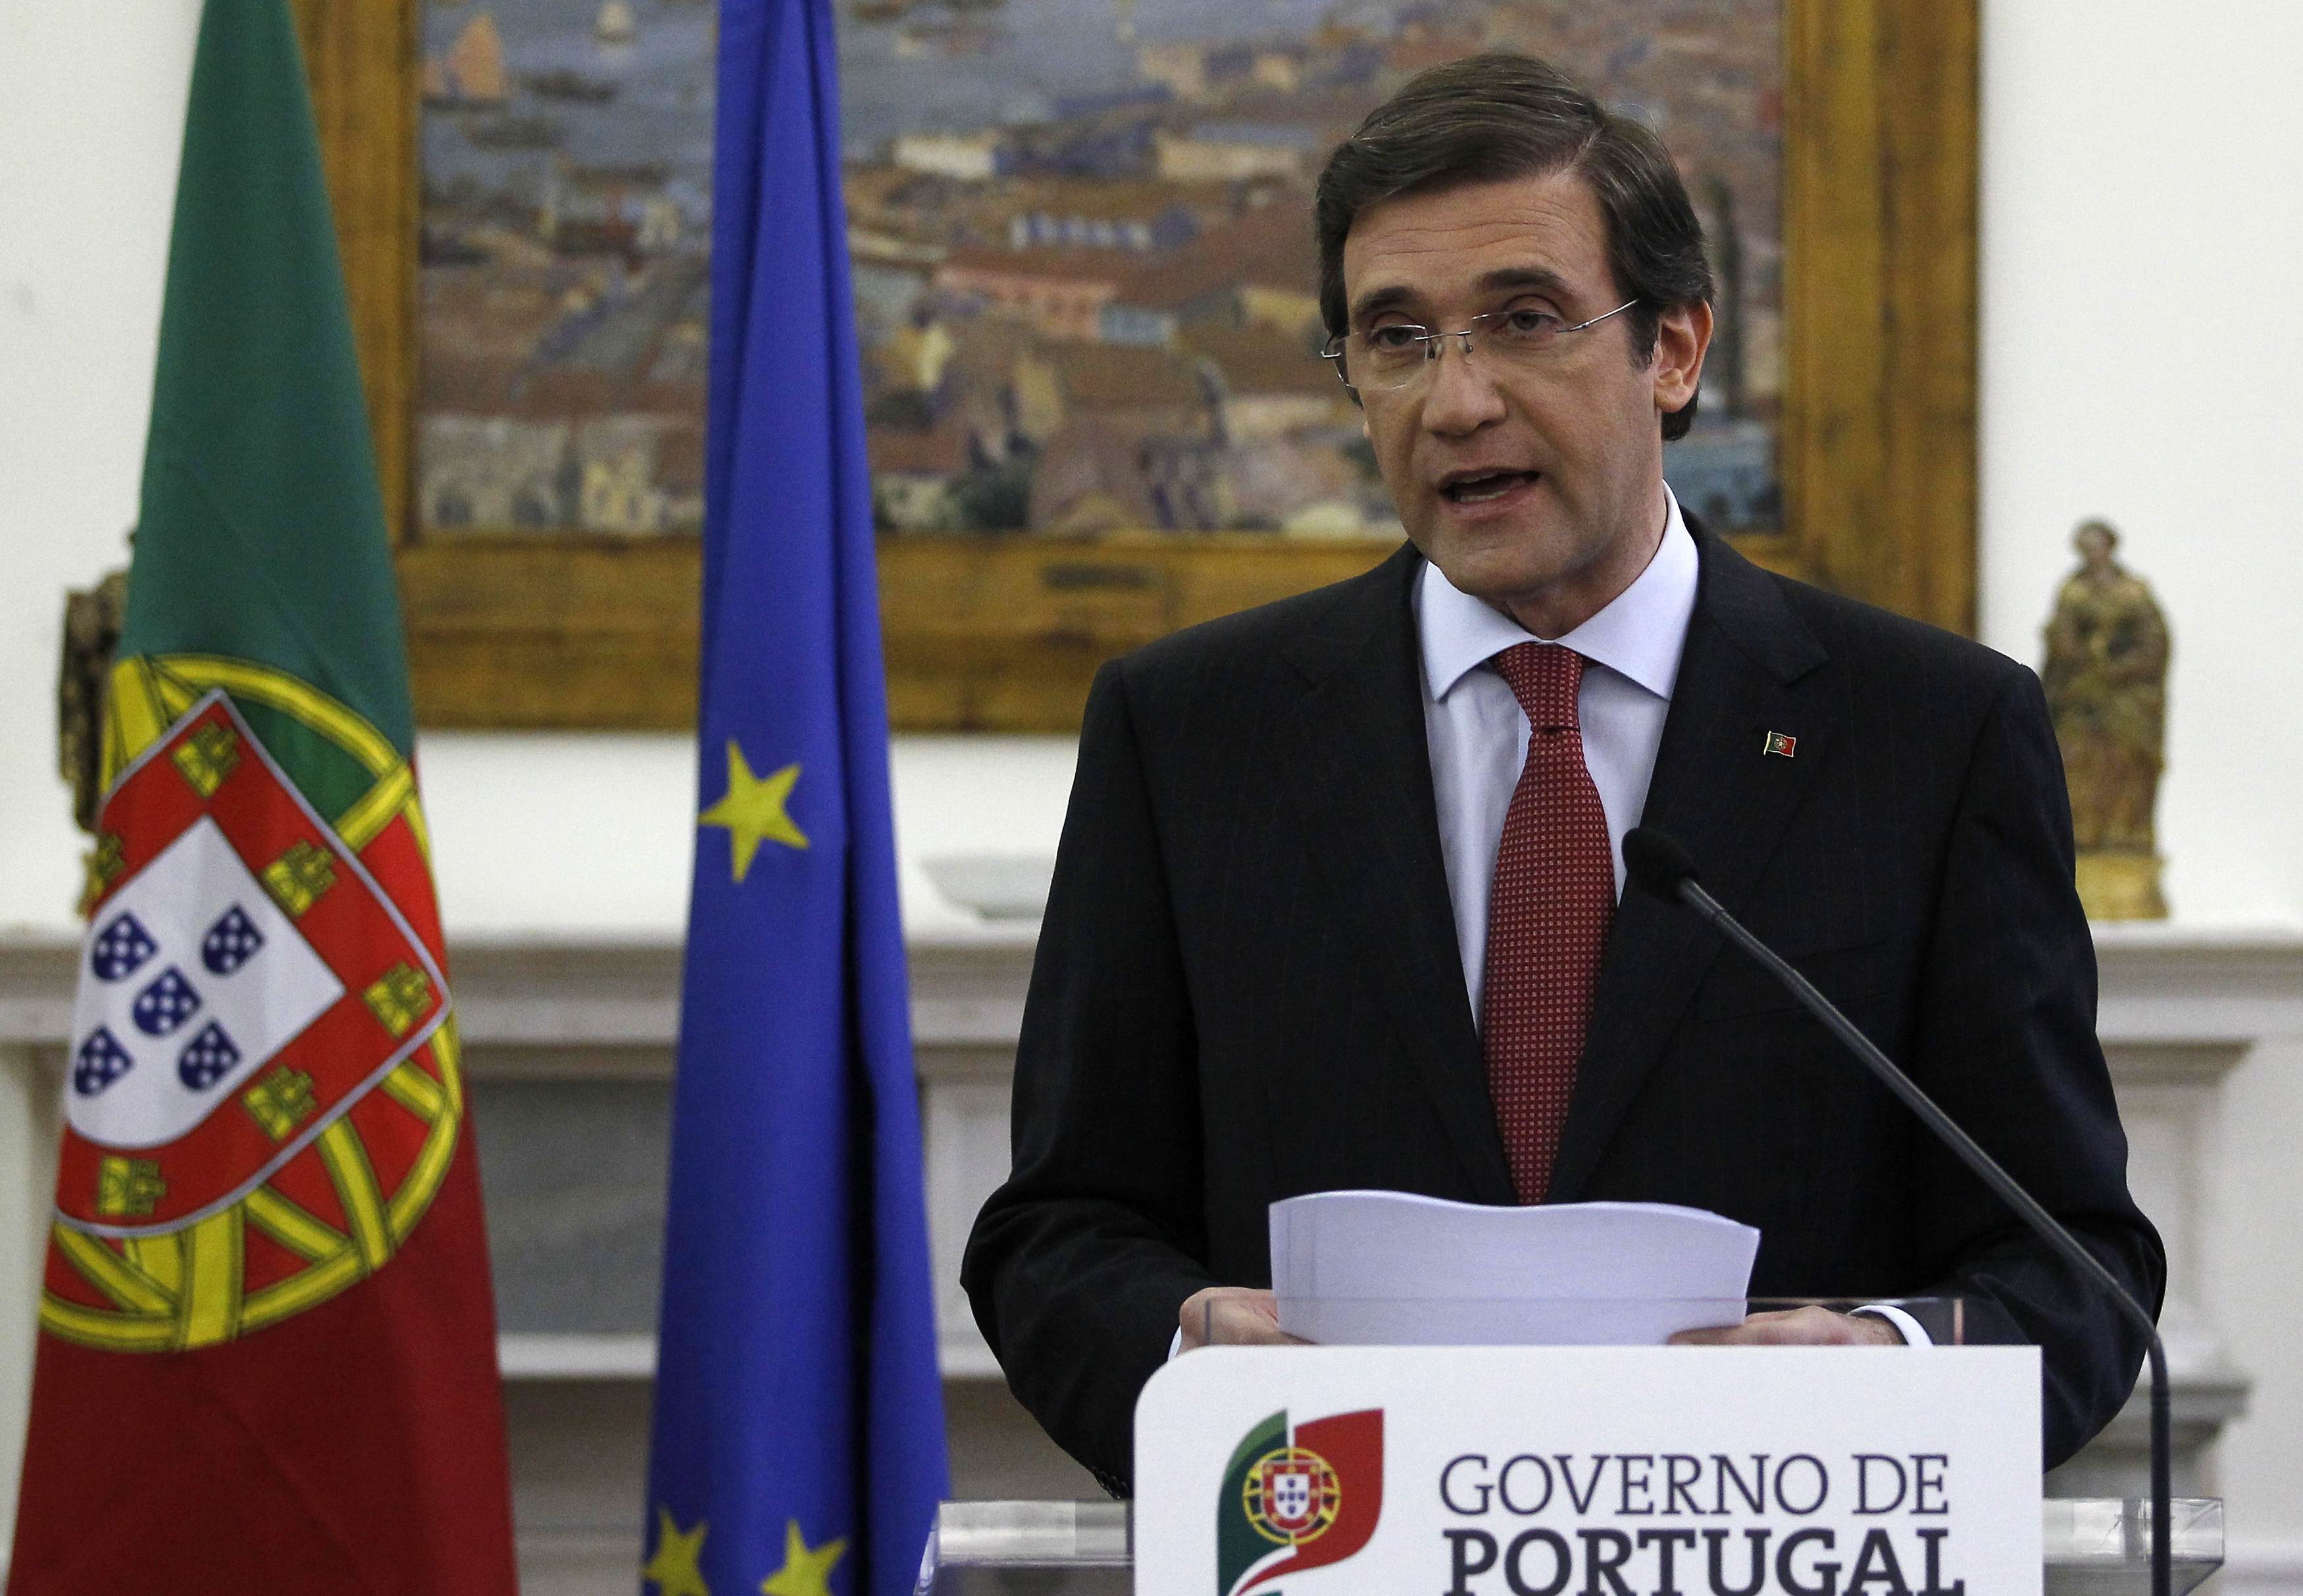 Πορτογαλία: Το δημόσιο προβλέπει να αντλήσει 6,5 έως 8 δισεκ. ευρώ από έντοκα γραμμάτια και ομόλογα